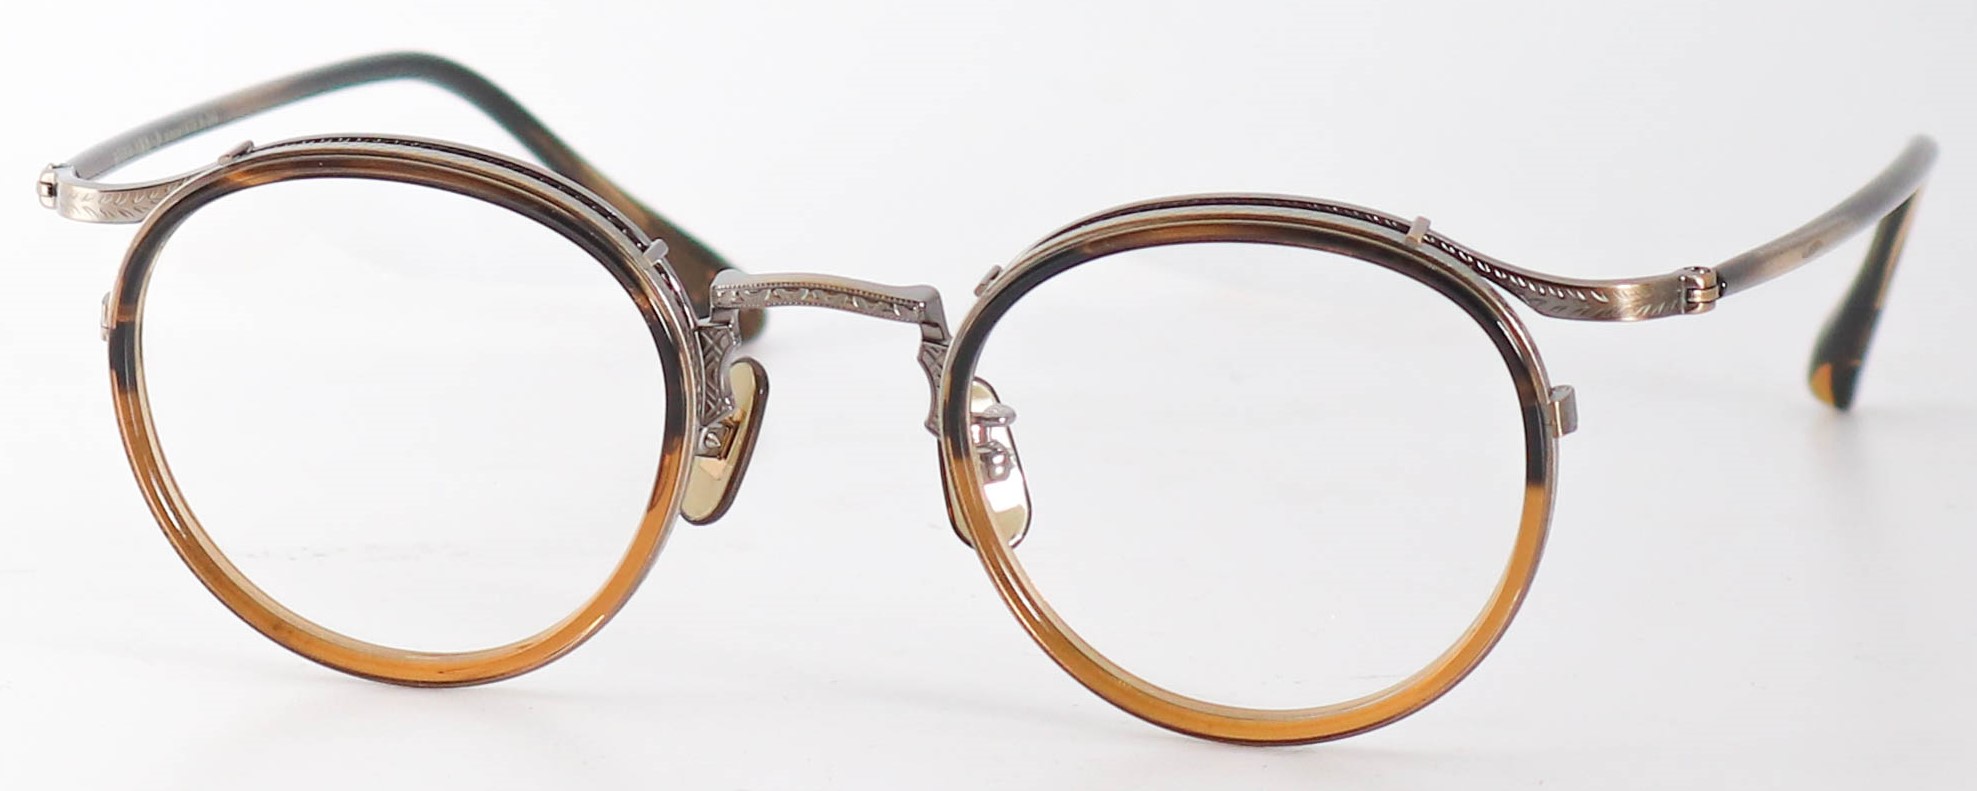 眼鏡のカラータイプC-4 Brown-Half/At-Gold